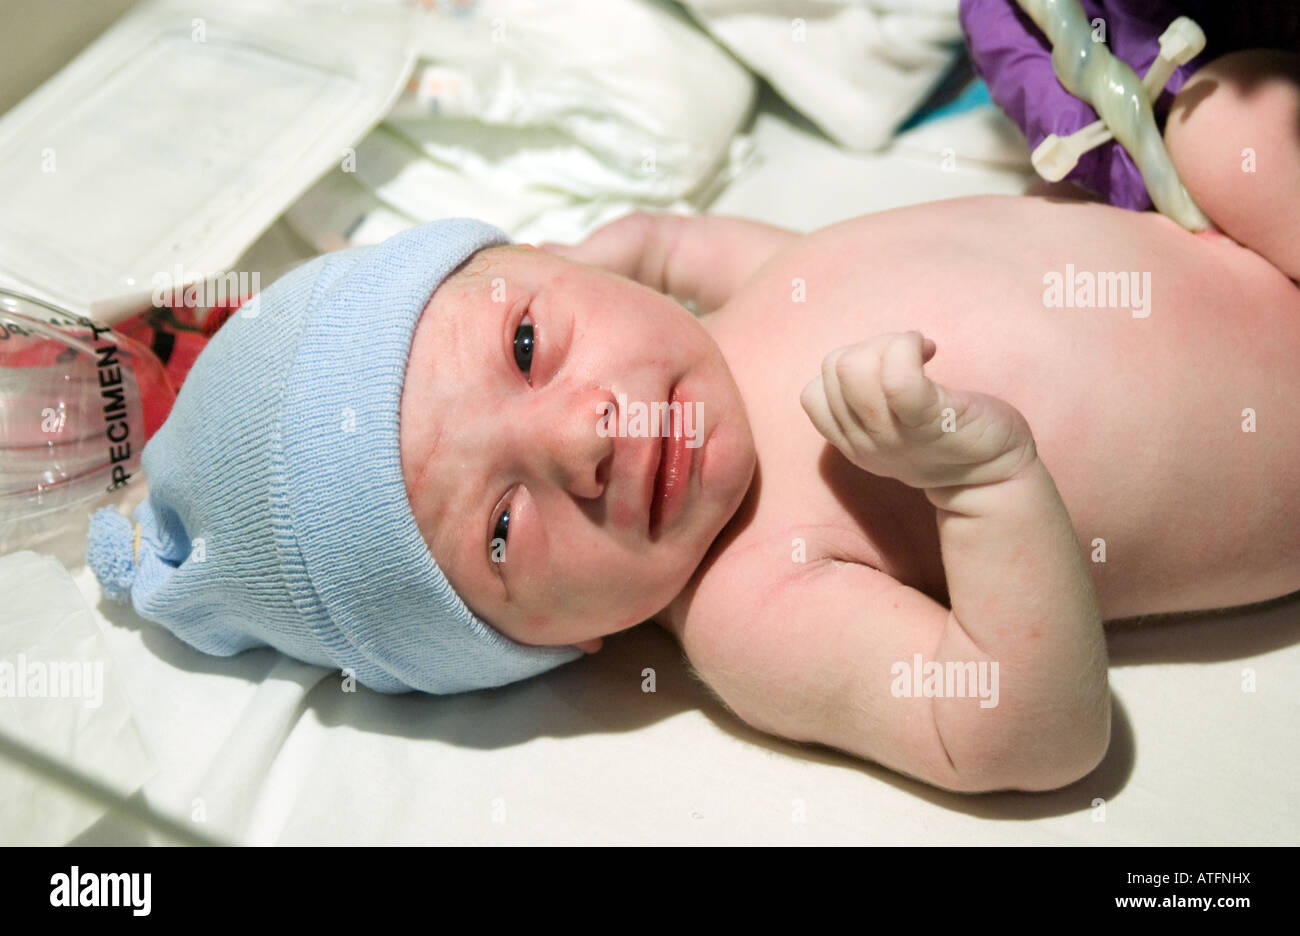 Un neonato ragazzo prende uno sguardo intorno a pochi minuti dopo essere nato con il cordone ombelicale ancora attaccato. Foto Stock